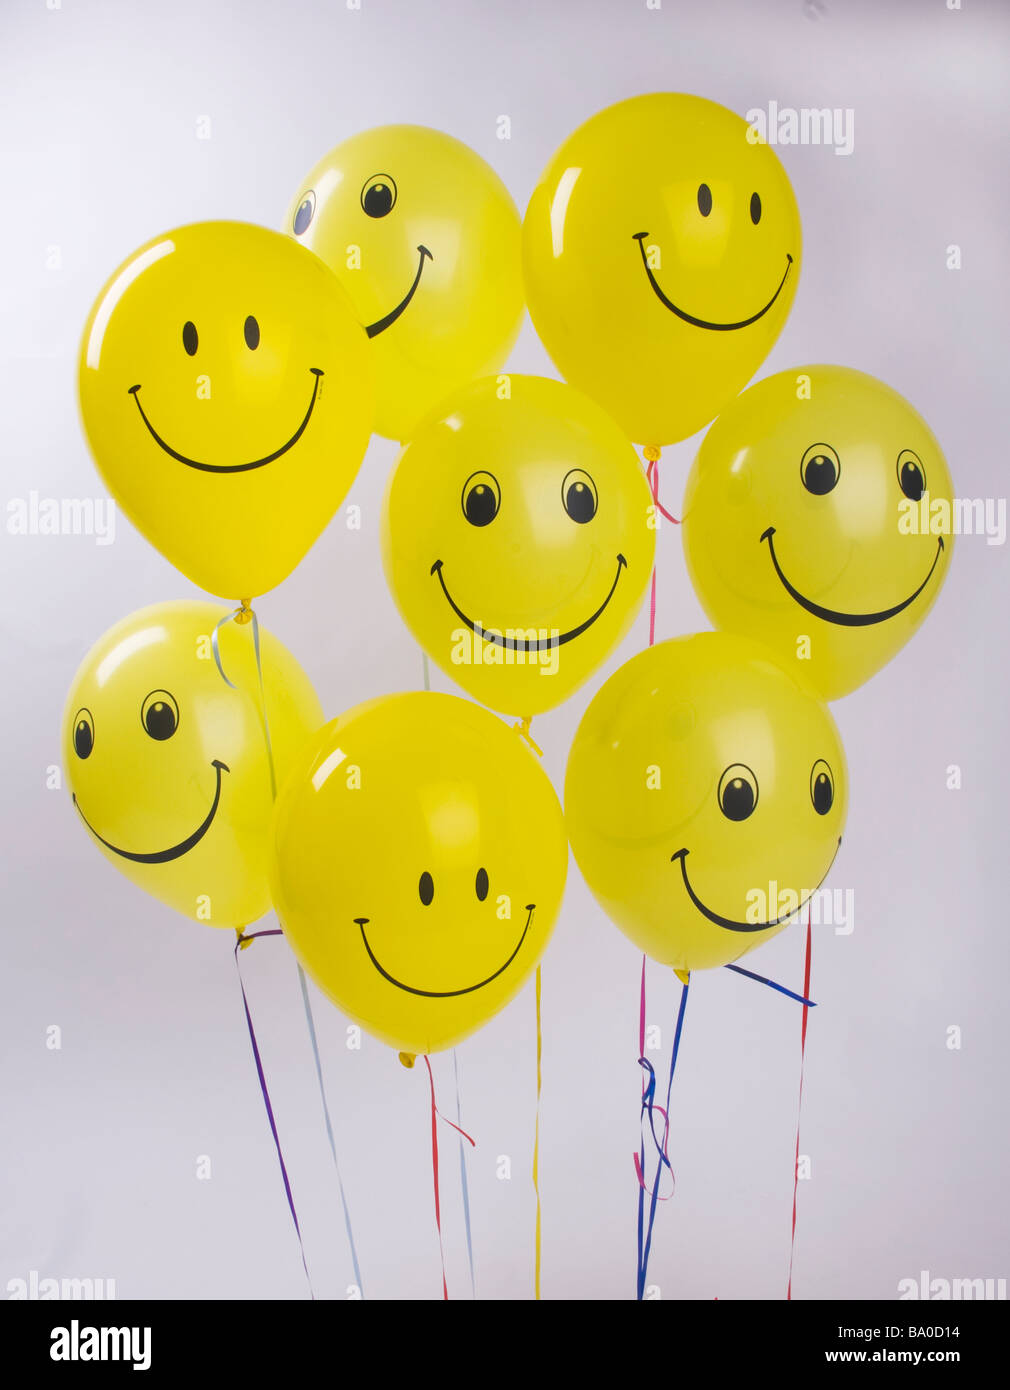 Smily faces baloons Stock Photo